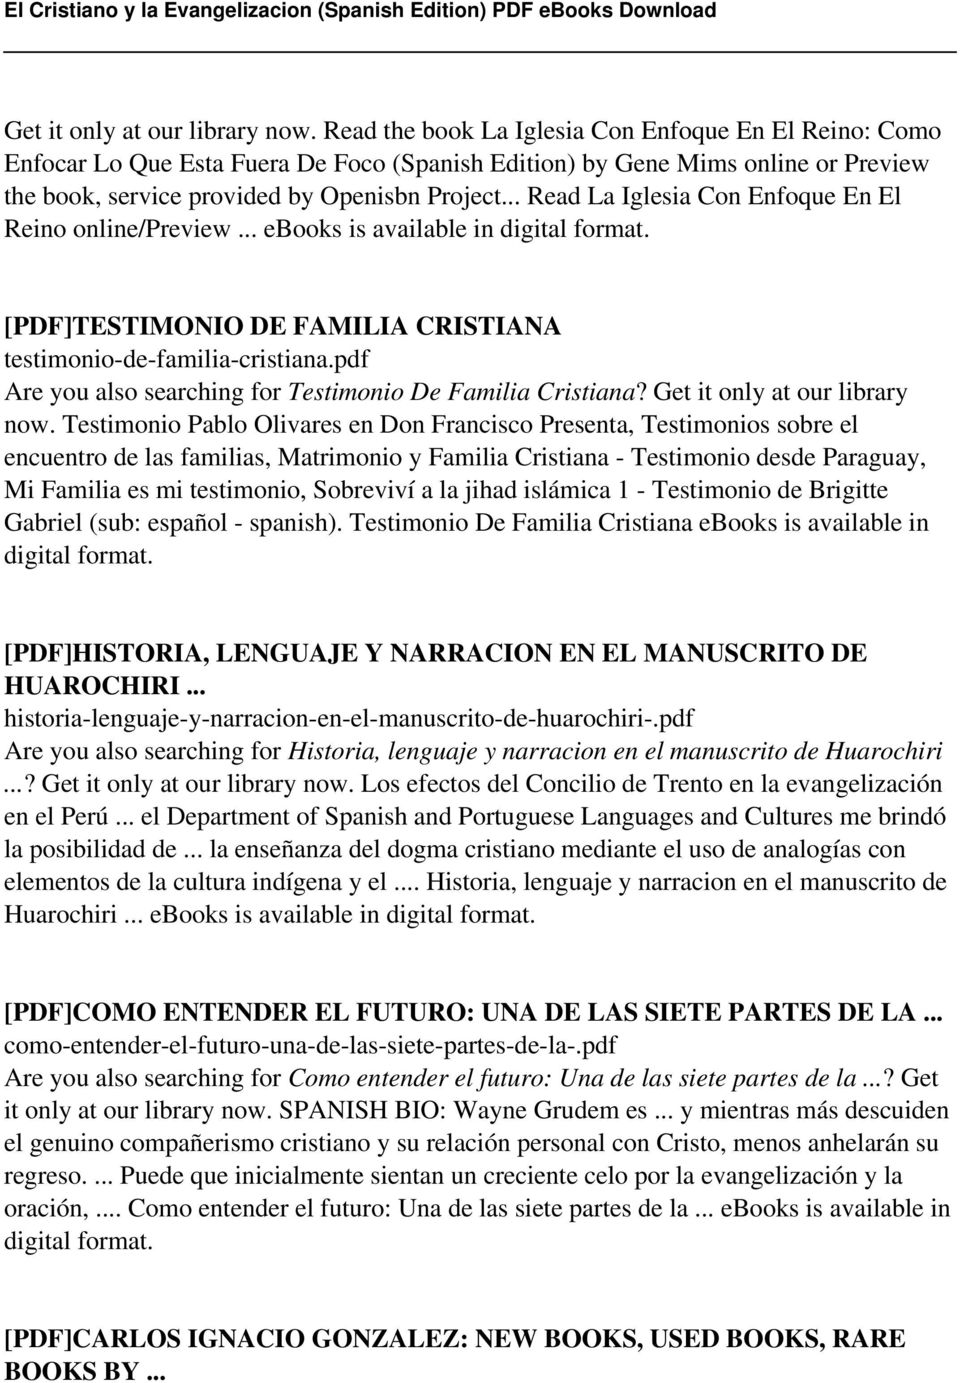 .. Read La Iglesia Con Enfoque En El Reino online/preview... ebooks is available in digital format. [PDF]TESTIMONIO DE FAMILIA CRISTIANA testimonio-de-familia-cristiana.